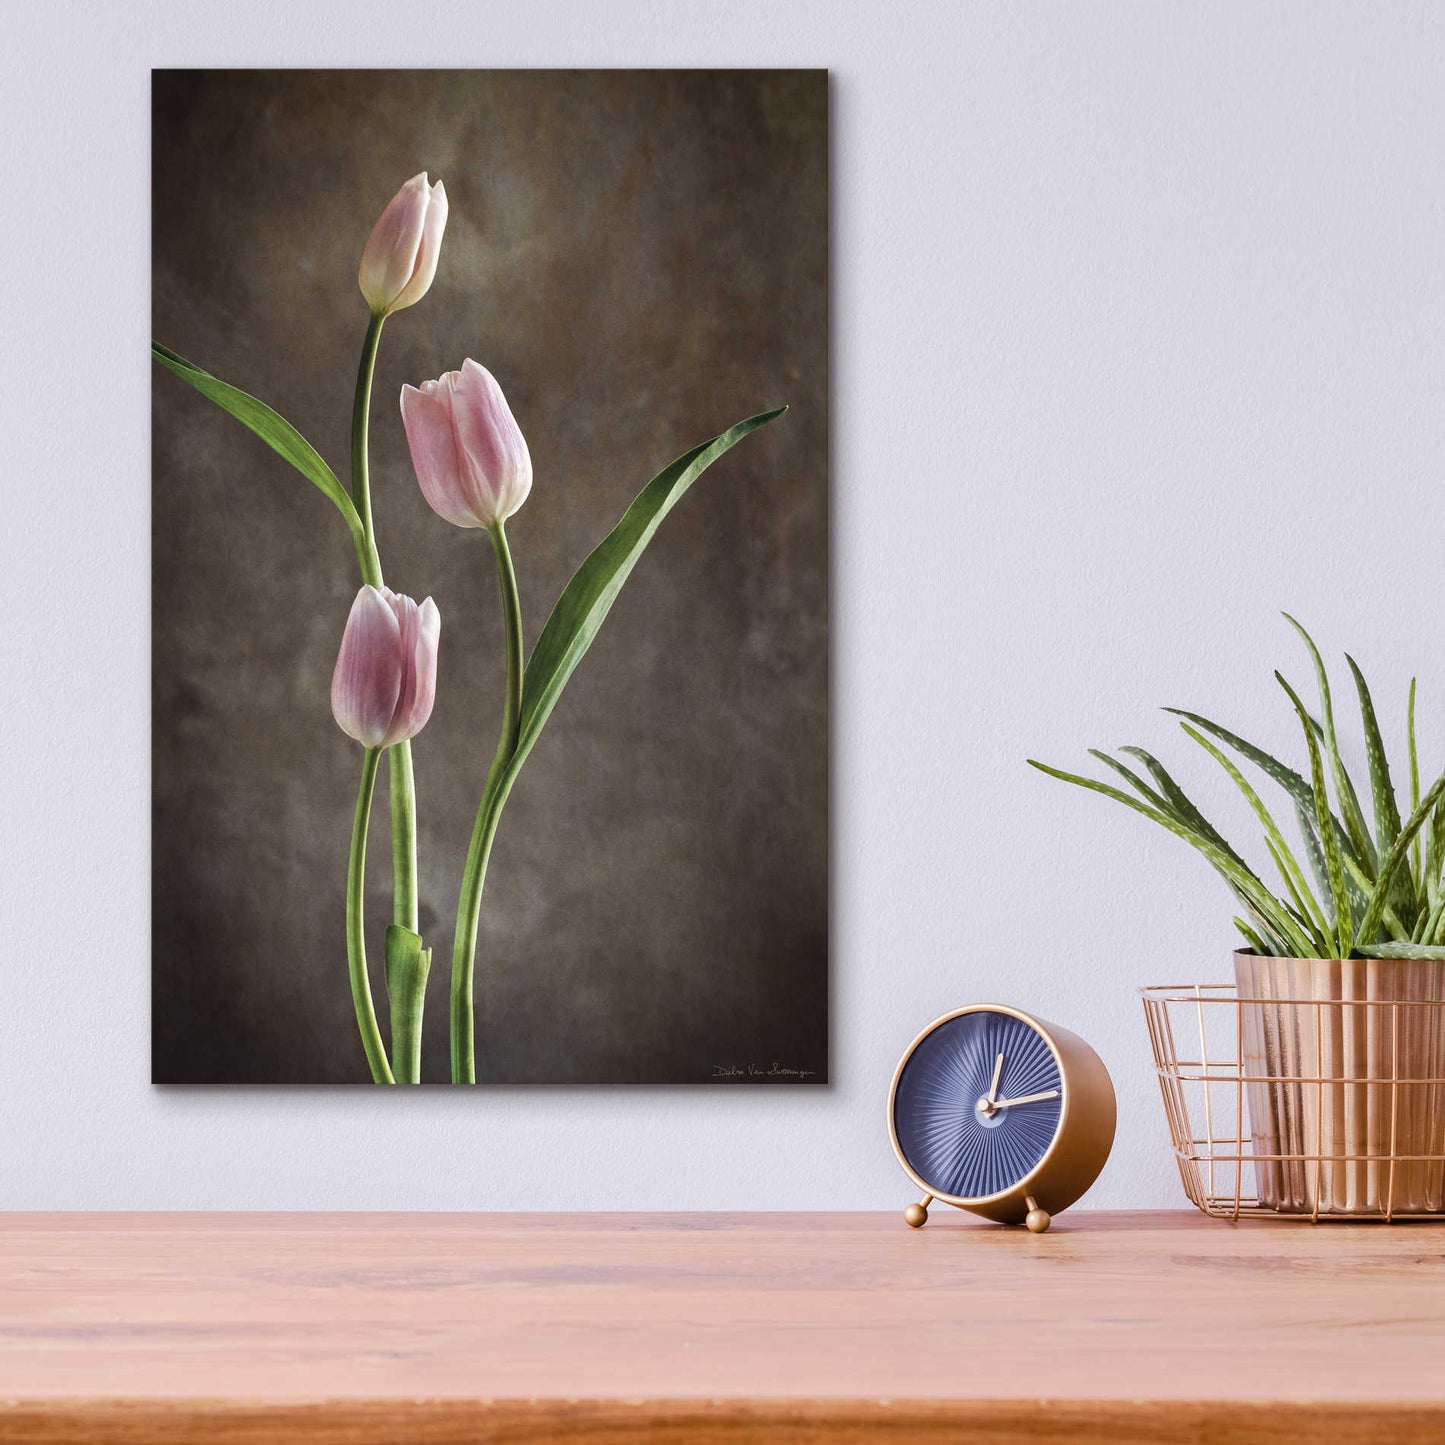 Epic Art 'Spring Tulips VIII' by Debra Van Swearingen, Acrylic Glass Wall Art,12x16